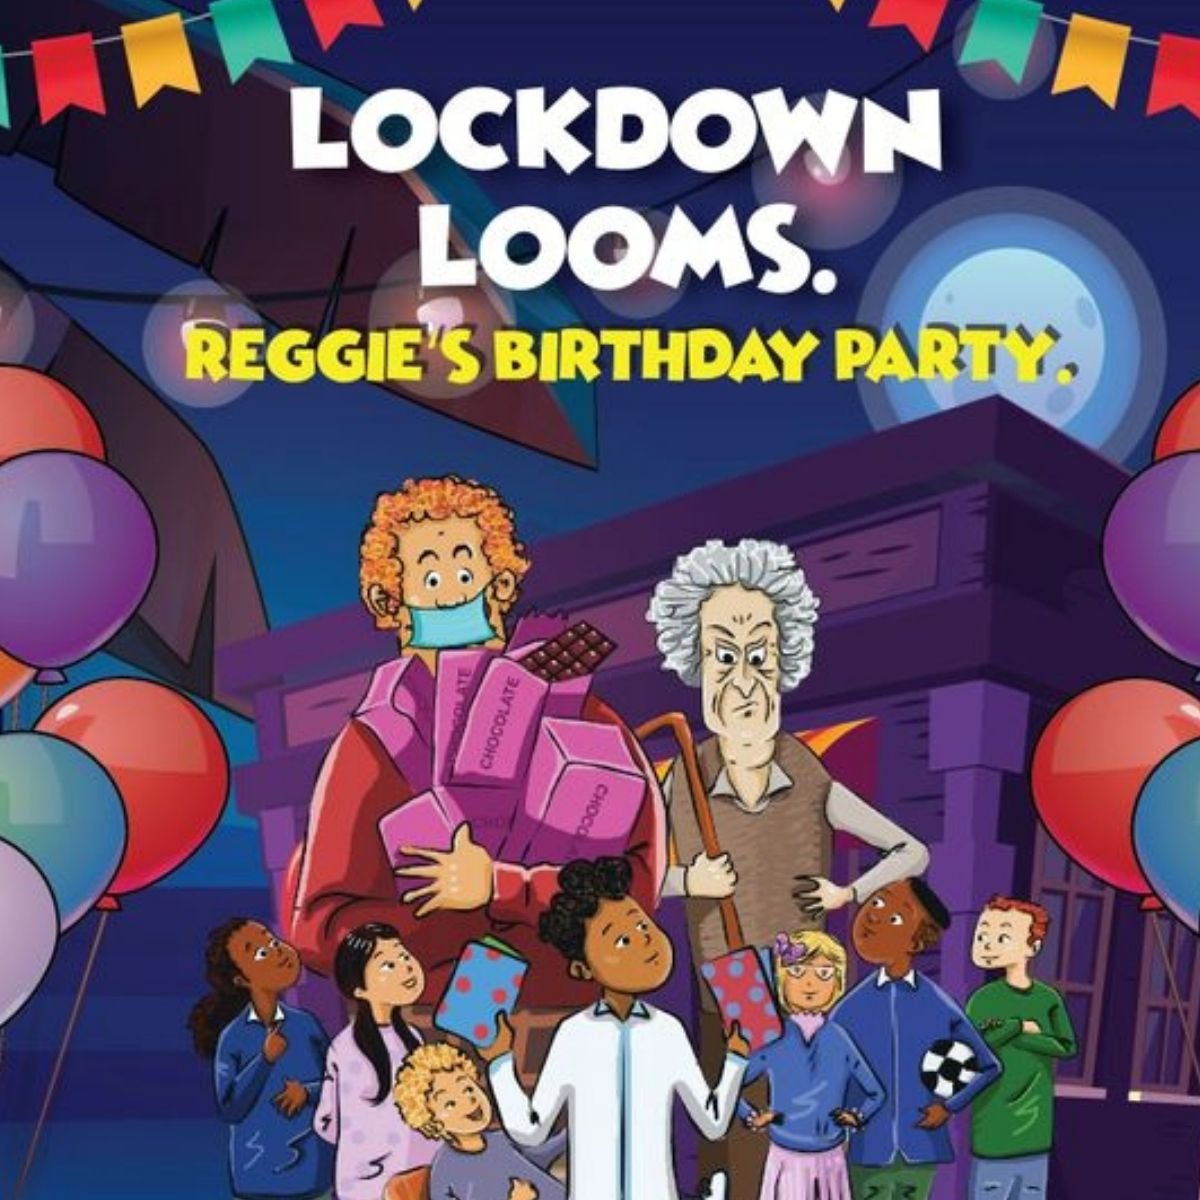 Naslovna korica knjige Lockdown Looms: Reggie's birthday party / Izvor: banjialexander.com